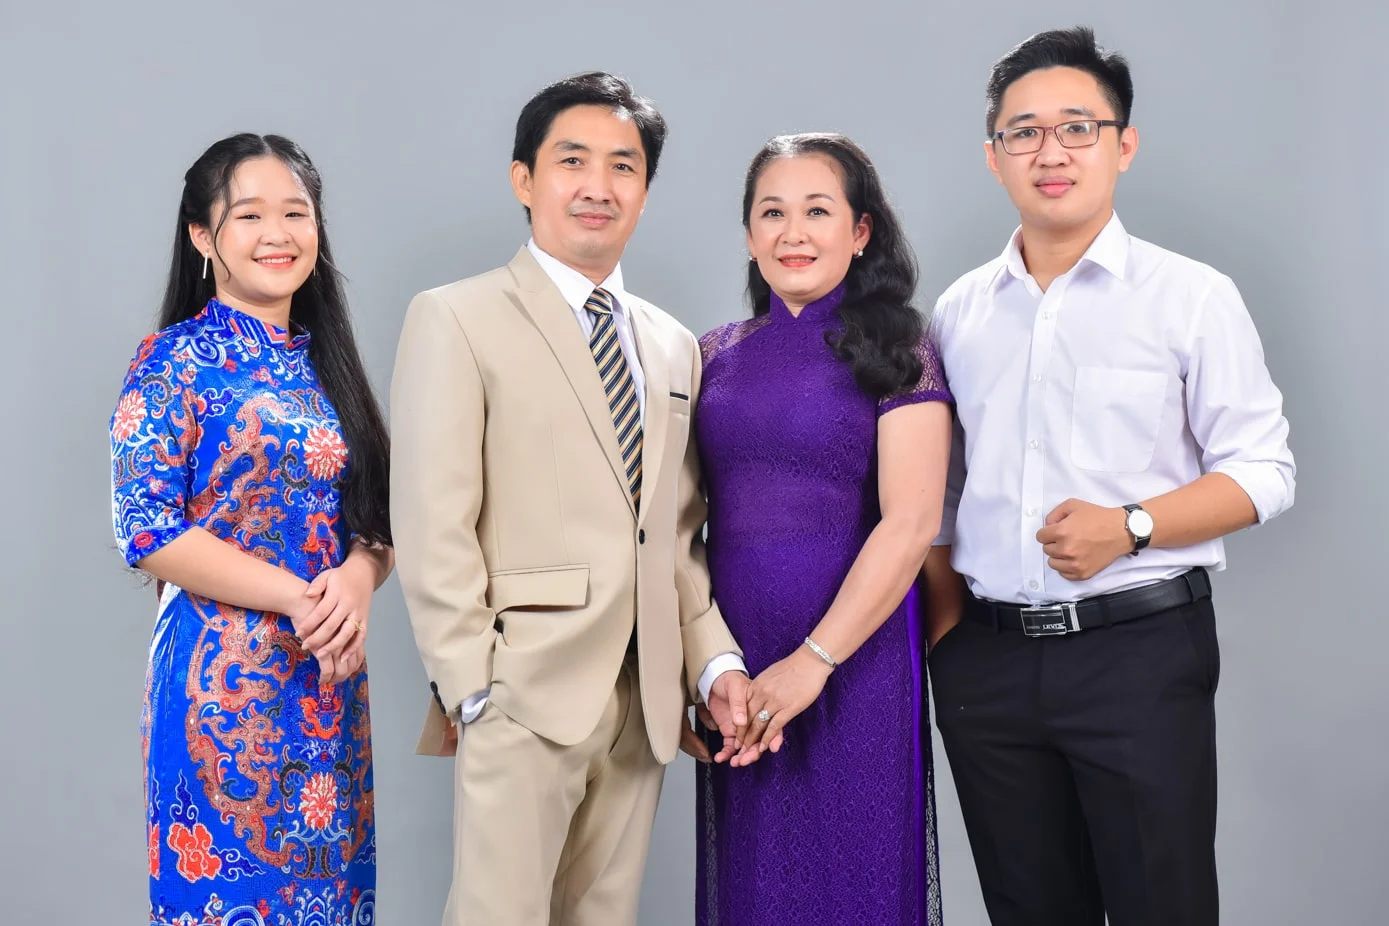 Anh gia dinh 3 min - Chụp ảnh gia đình 4 người trong studio đáng yêu - HThao Studio